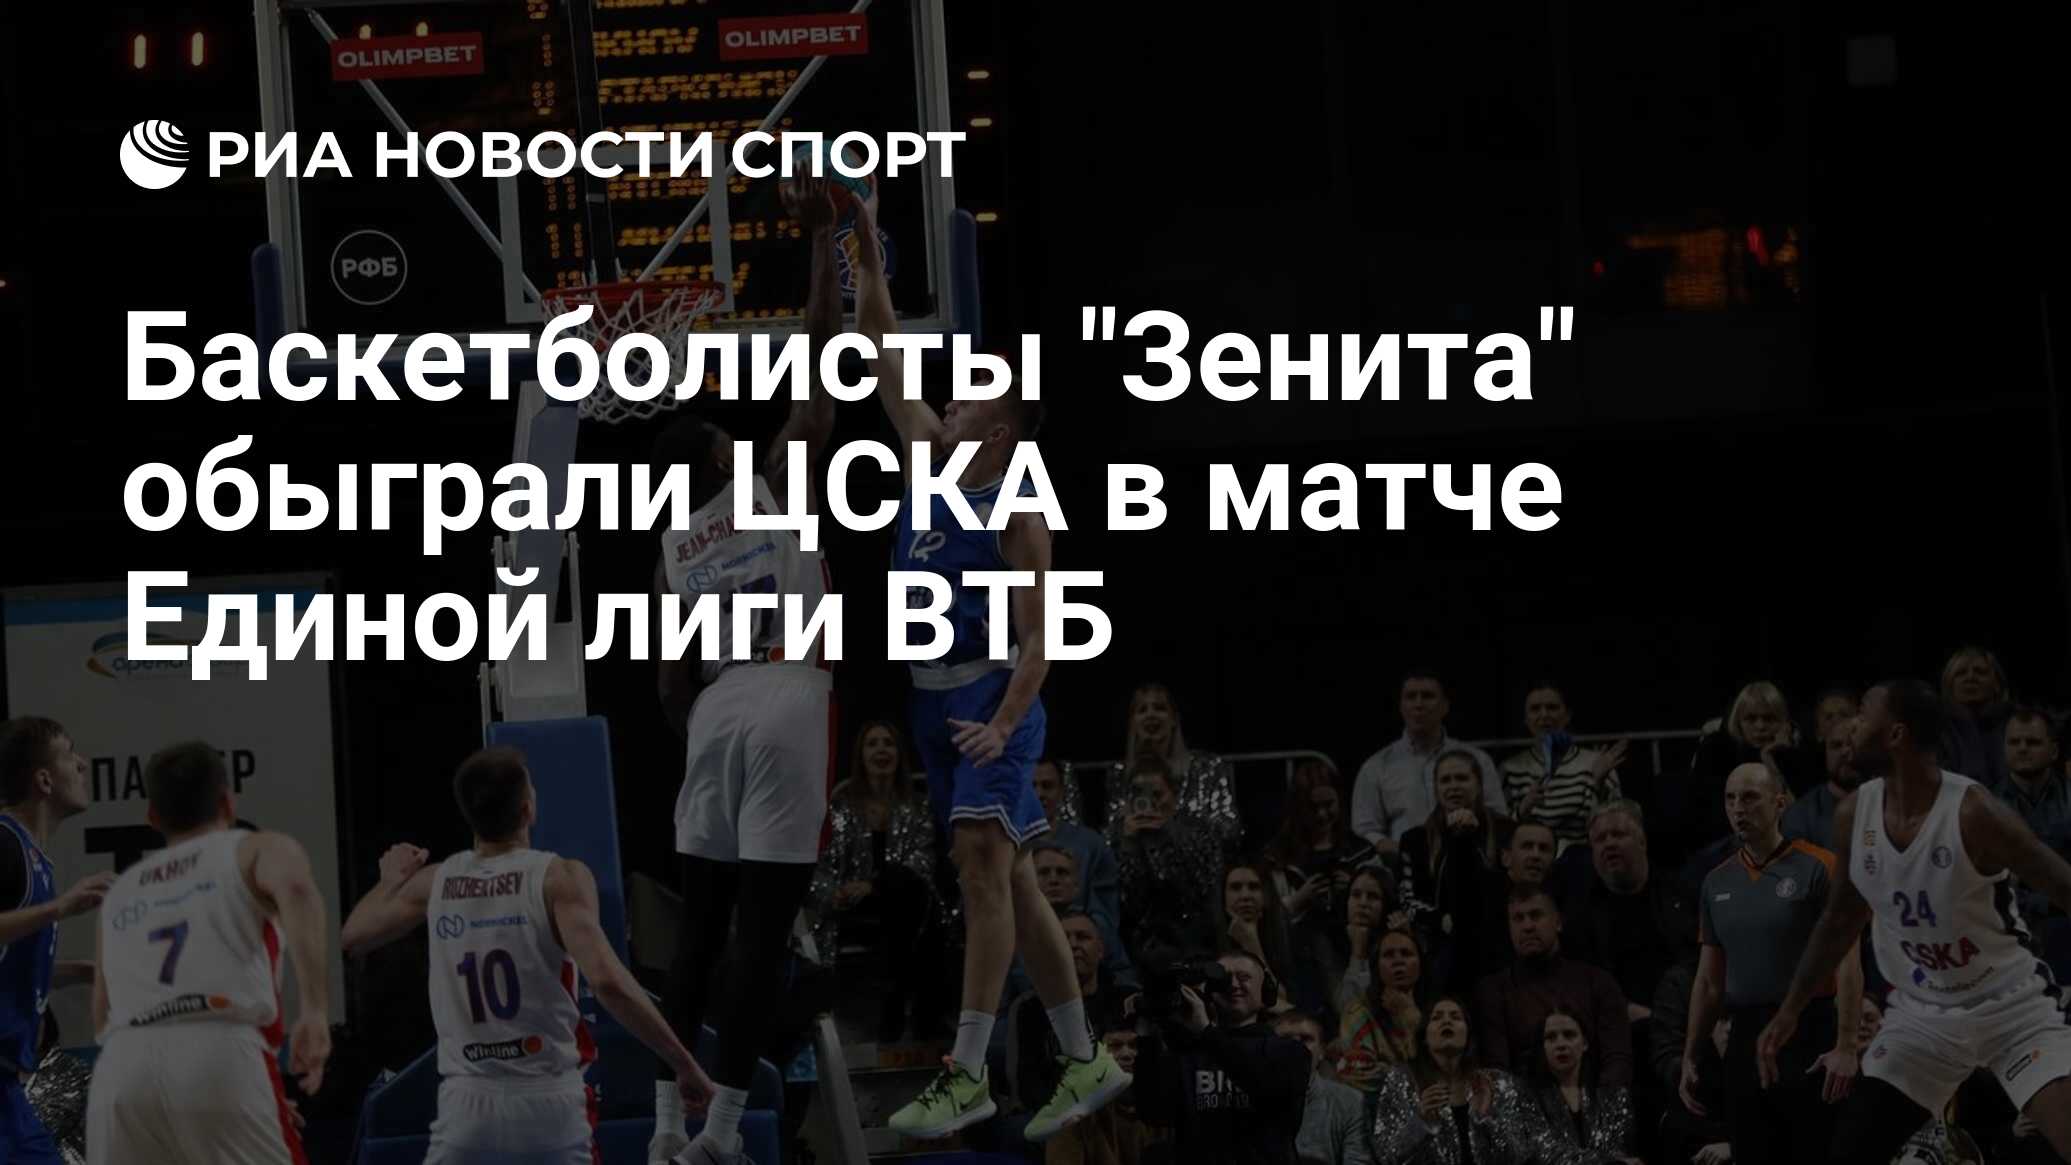 Баскетболисты "Зенита" обыграли ЦСКА в матче Единой лиги ВТБ